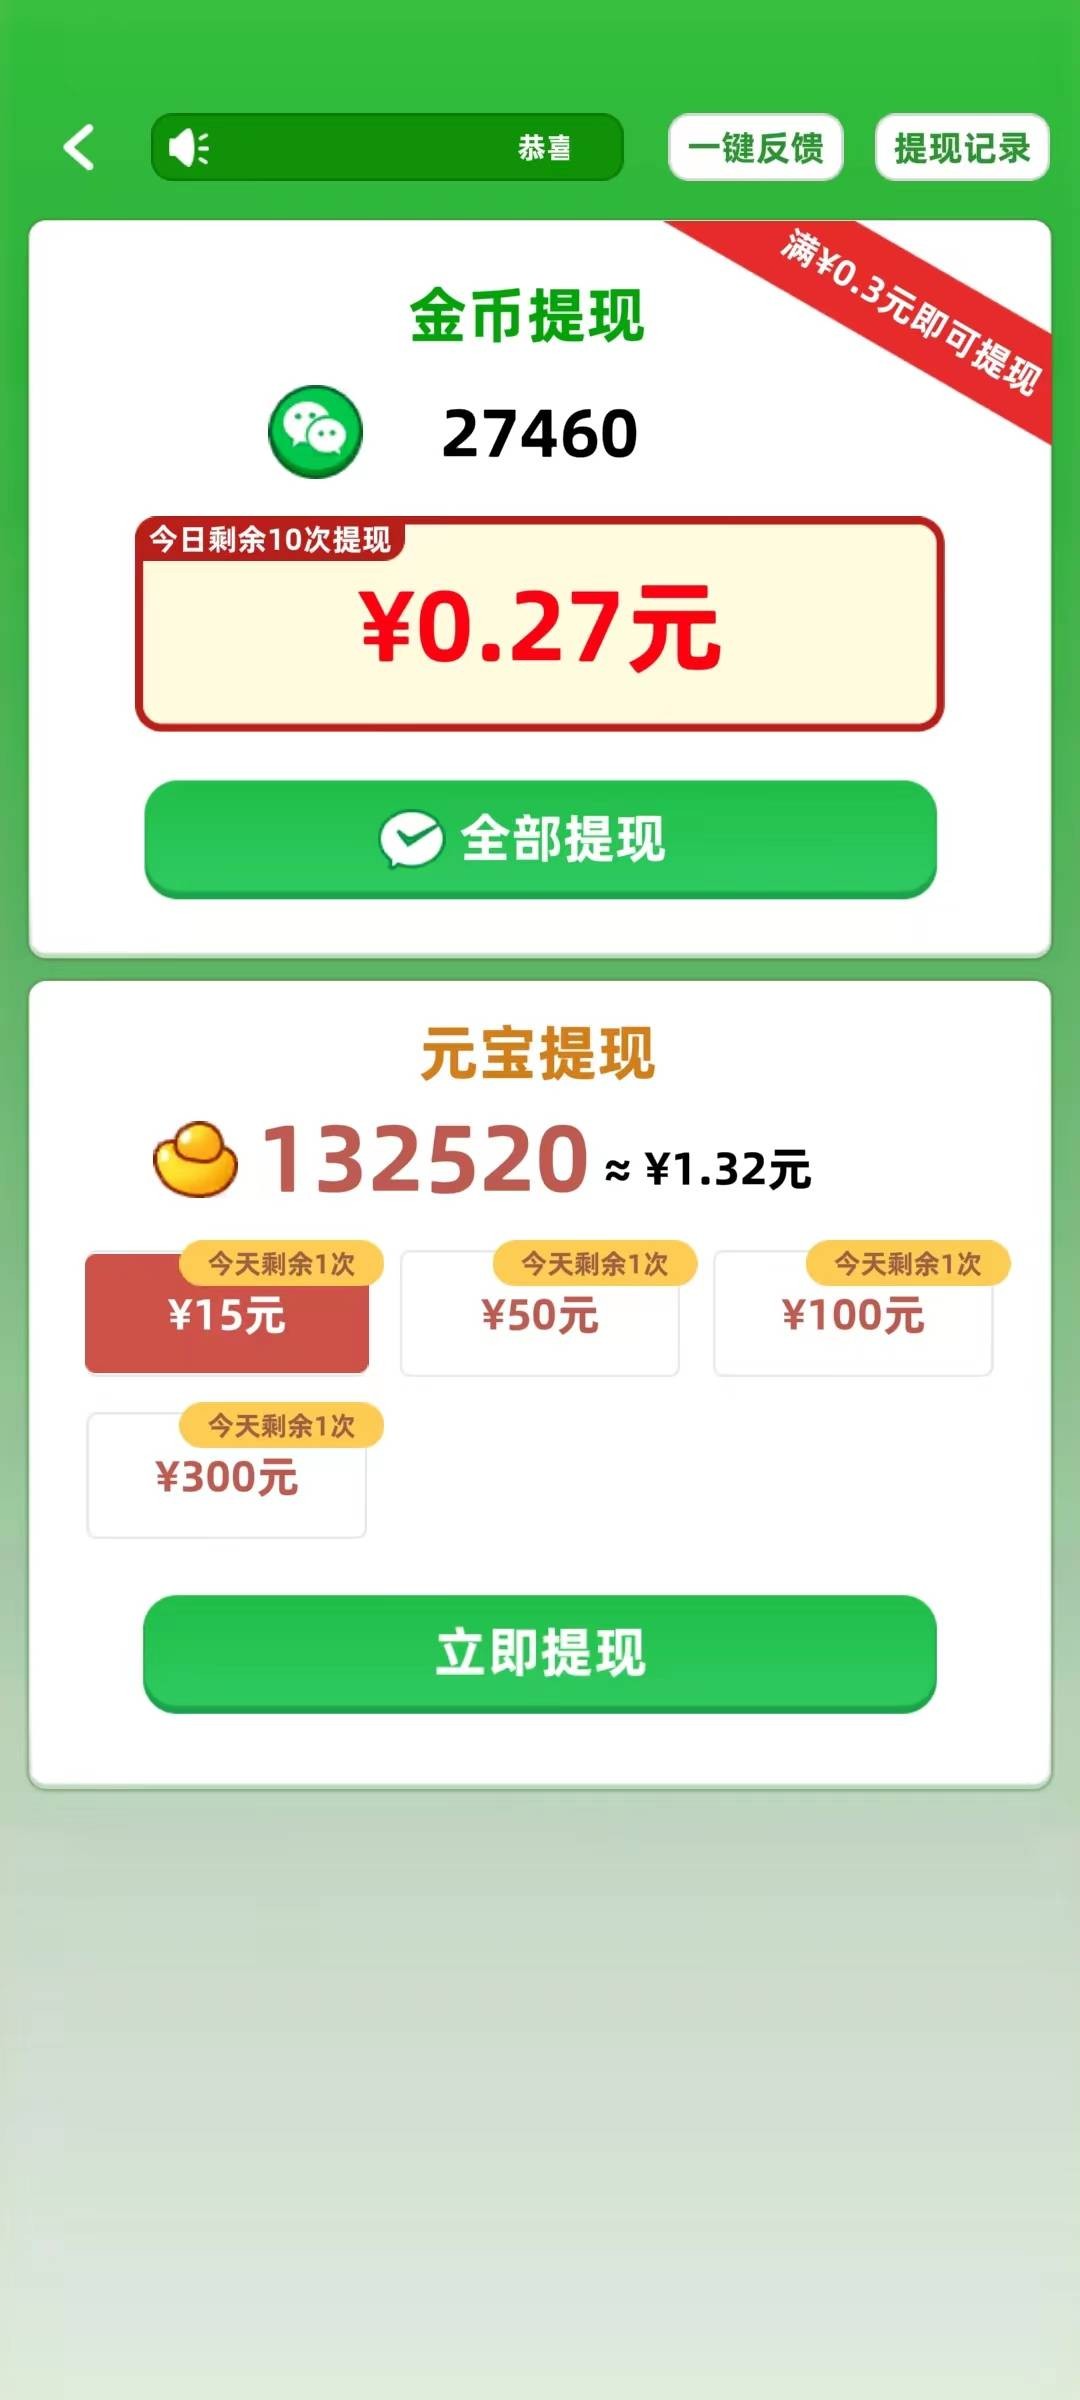 填字解谜王2游戏手游app下载1